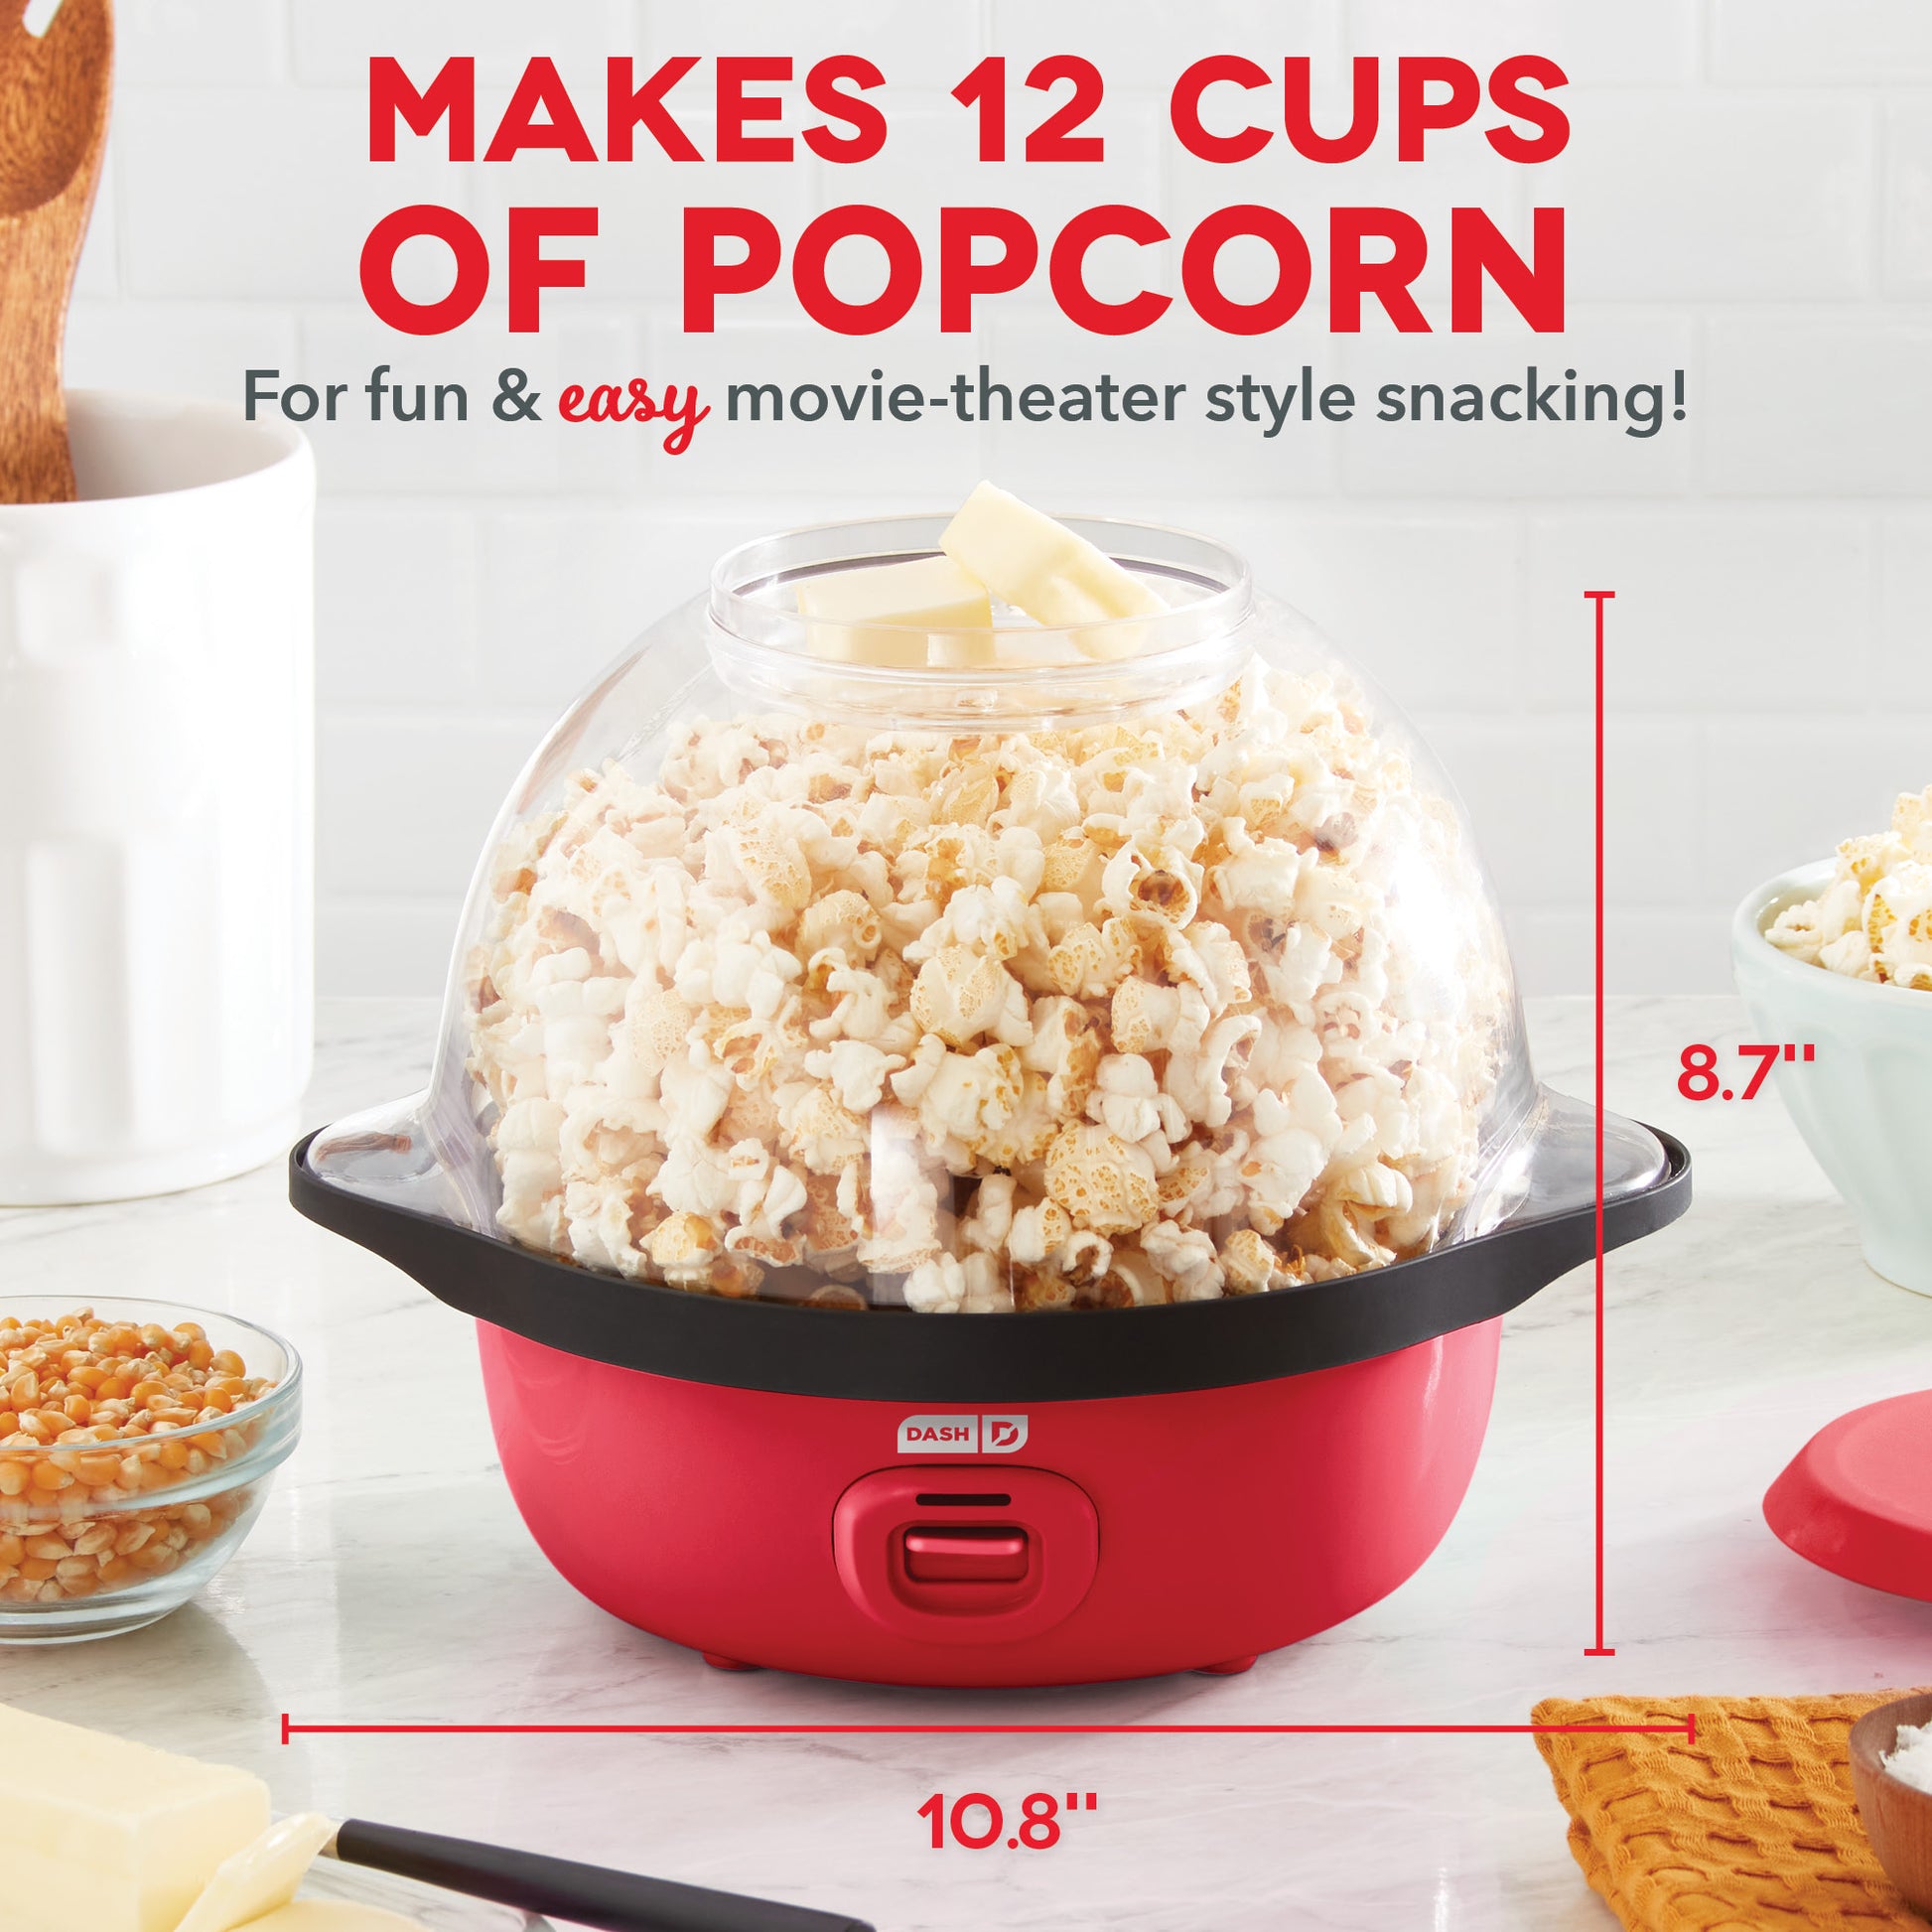 Dash SmartStore Stirring Popcorn Maker 3qt Hot Oil Electric Popcorn Machine with Clear Bowl 12 Cups - Aqua